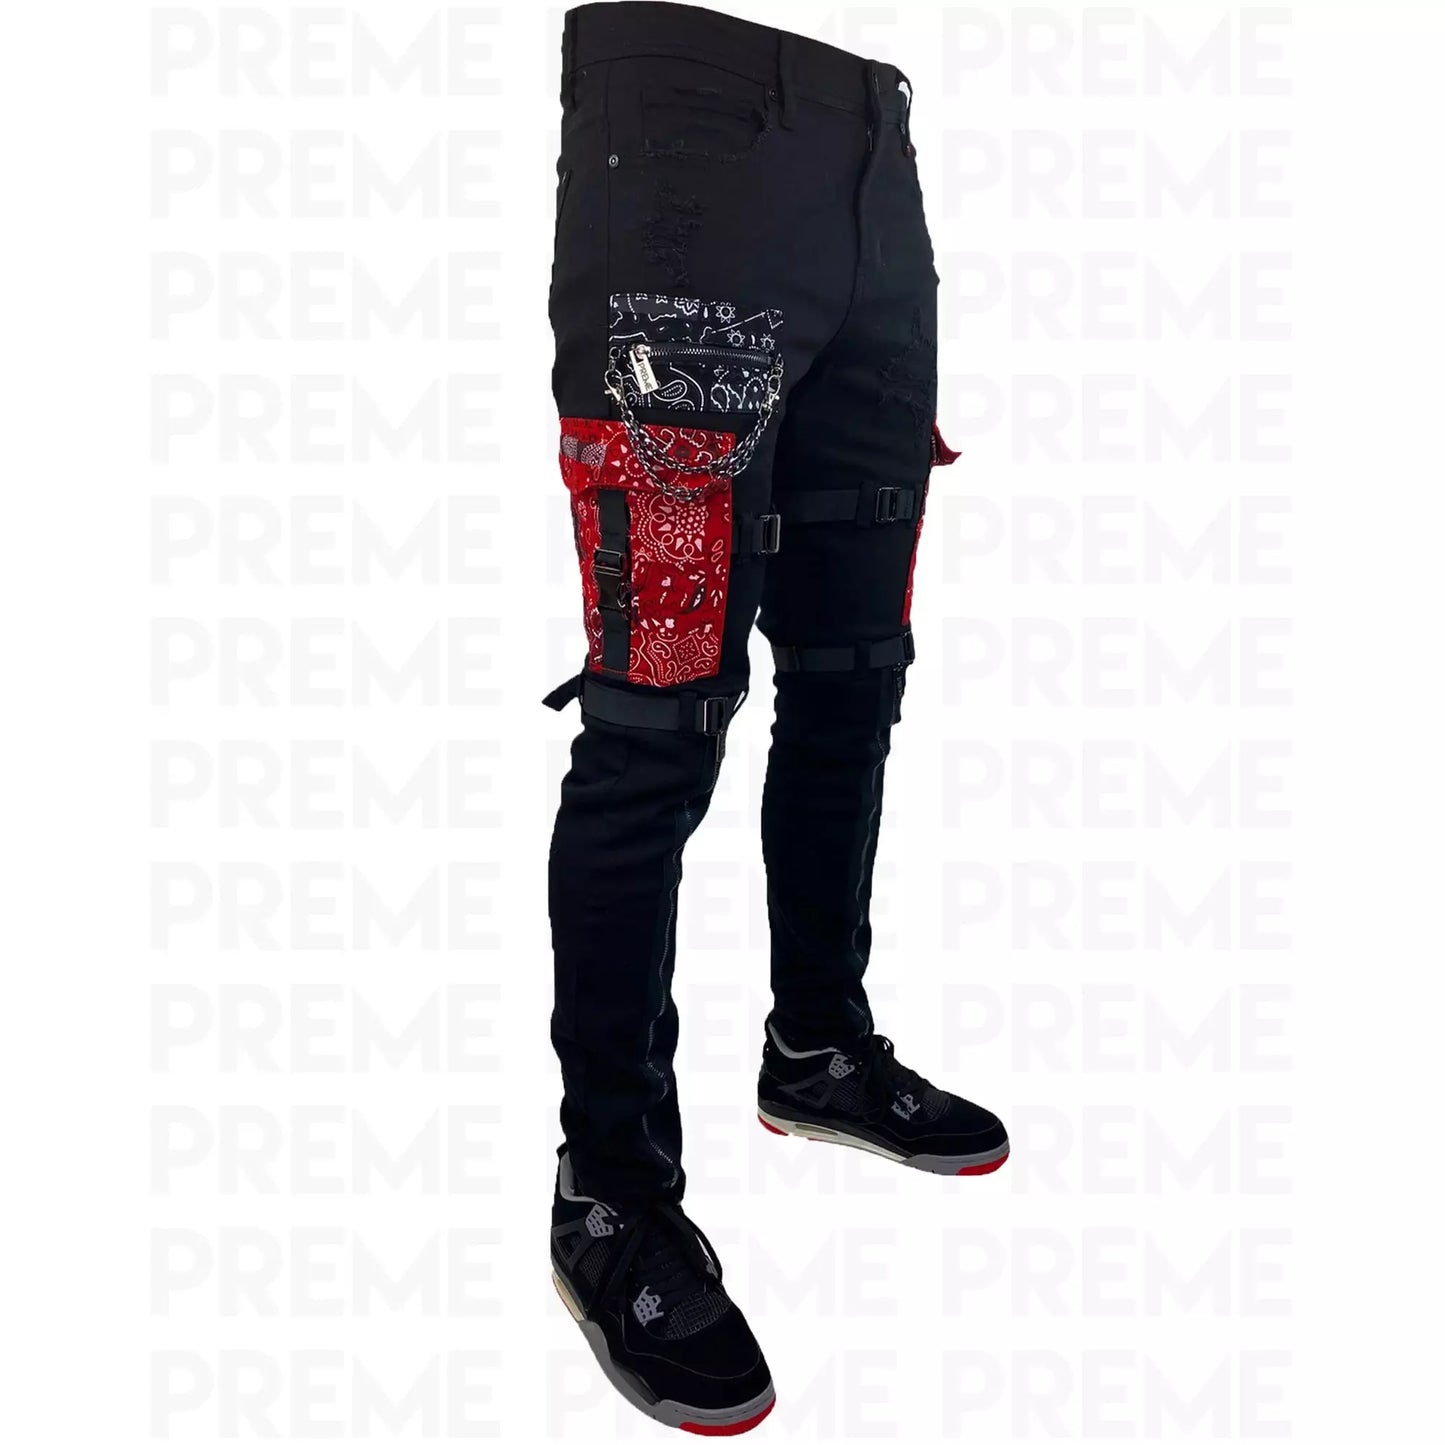 Preme Black Paisley Patched Denim Jeans (PR-WB-861)